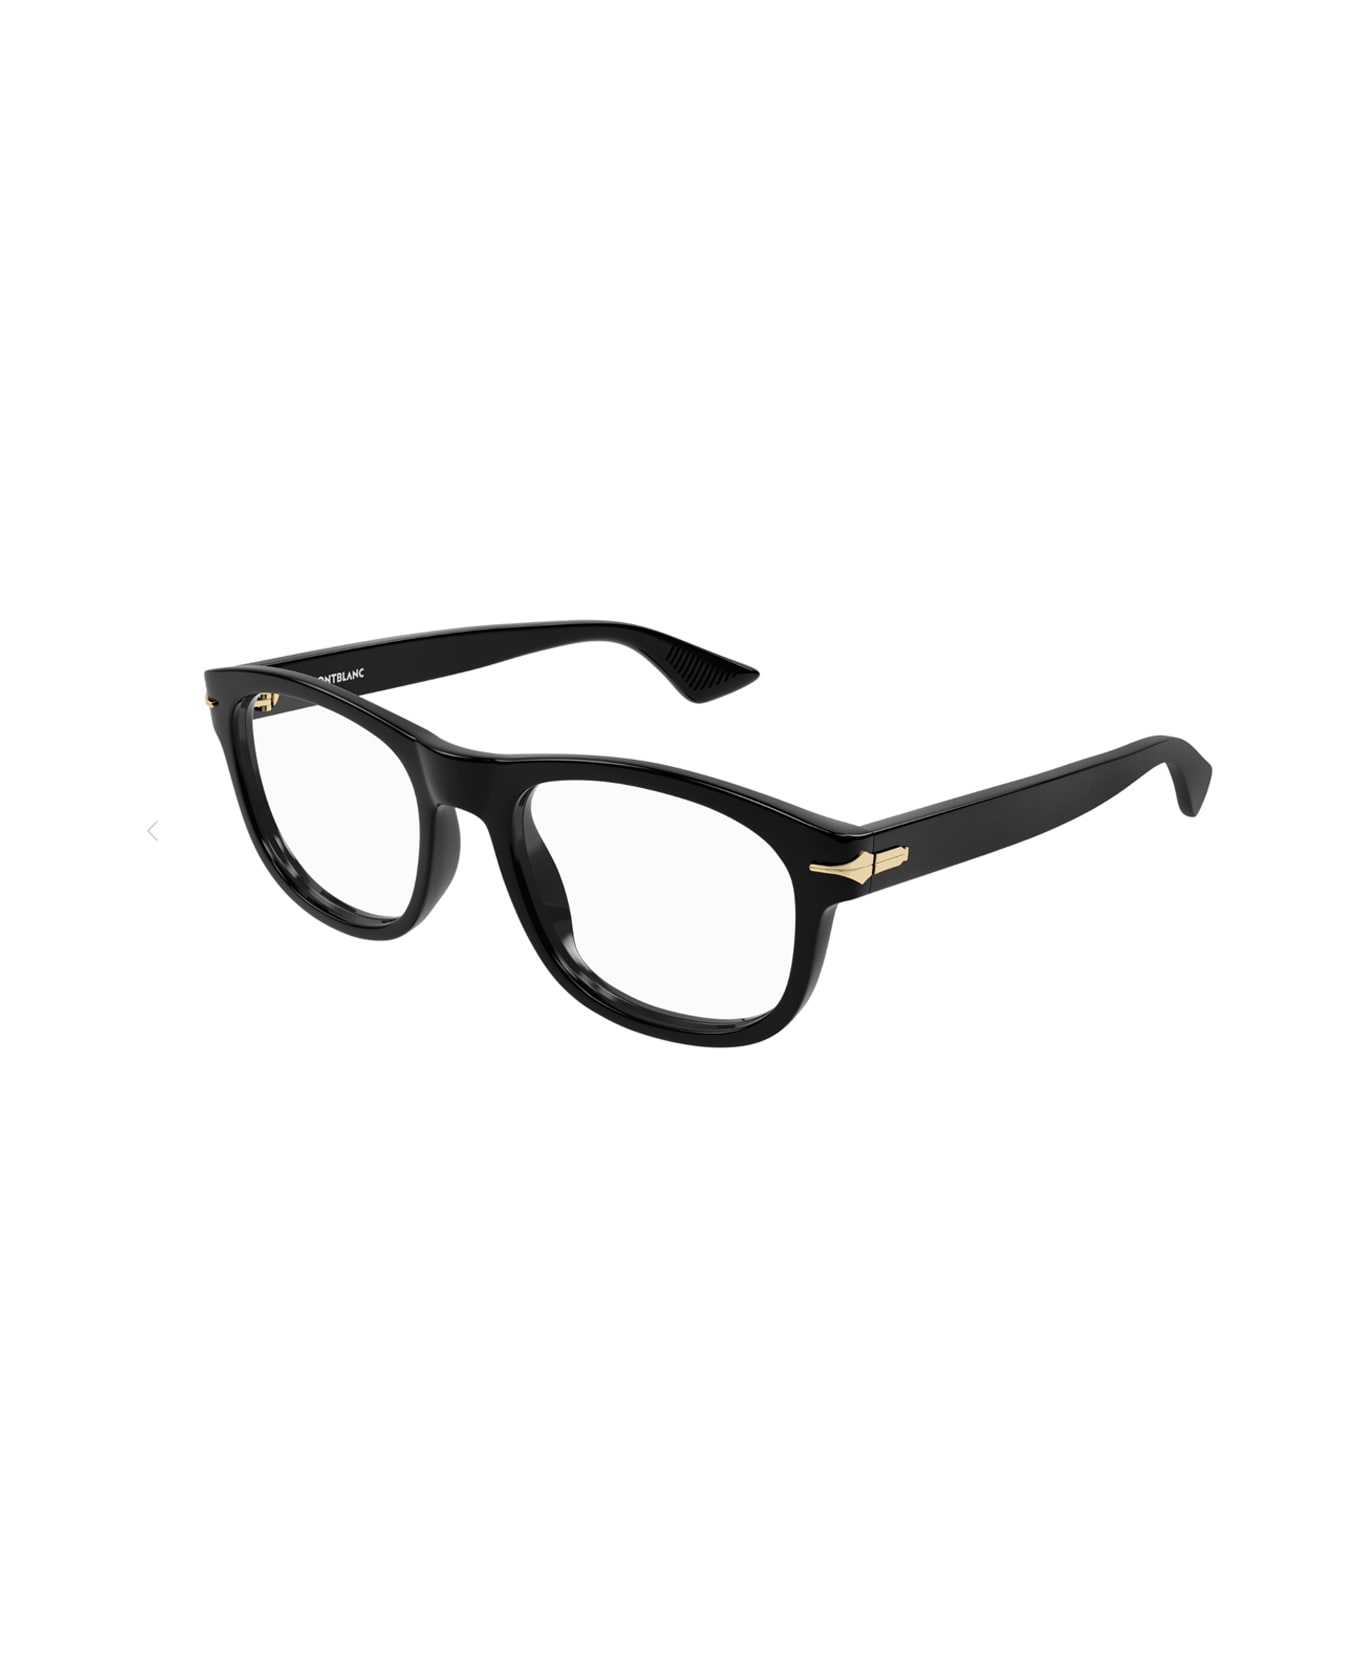 Montblanc Mb0306o 005 Glasses - Nero アイウェア